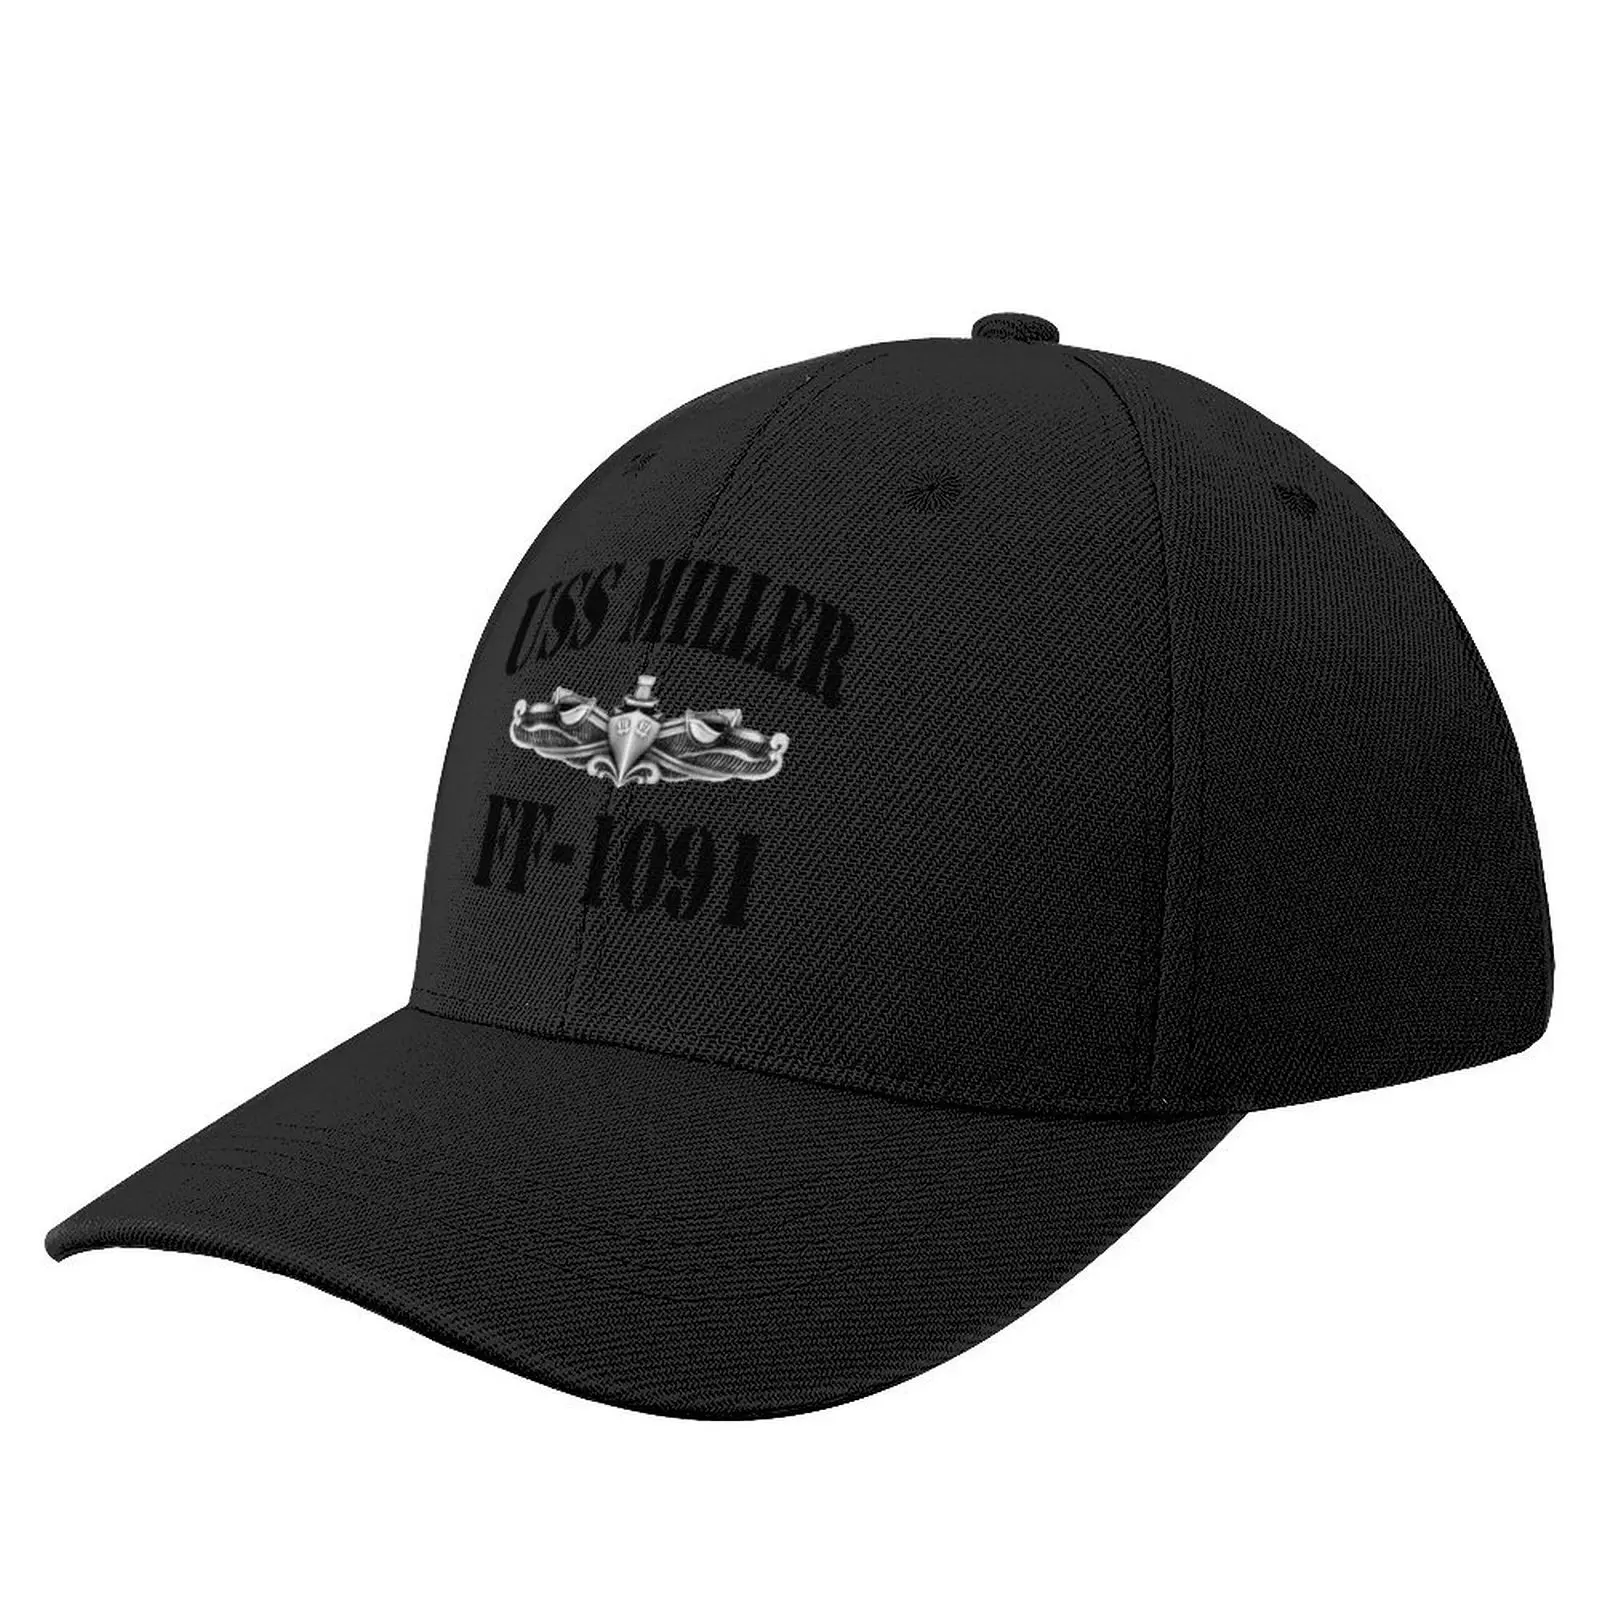 

USS MILLER (FF-1091) магазин SHIP'S Солнцезащитная бейсболка |-F-| Новая в шляпе мужские женские головные уборы